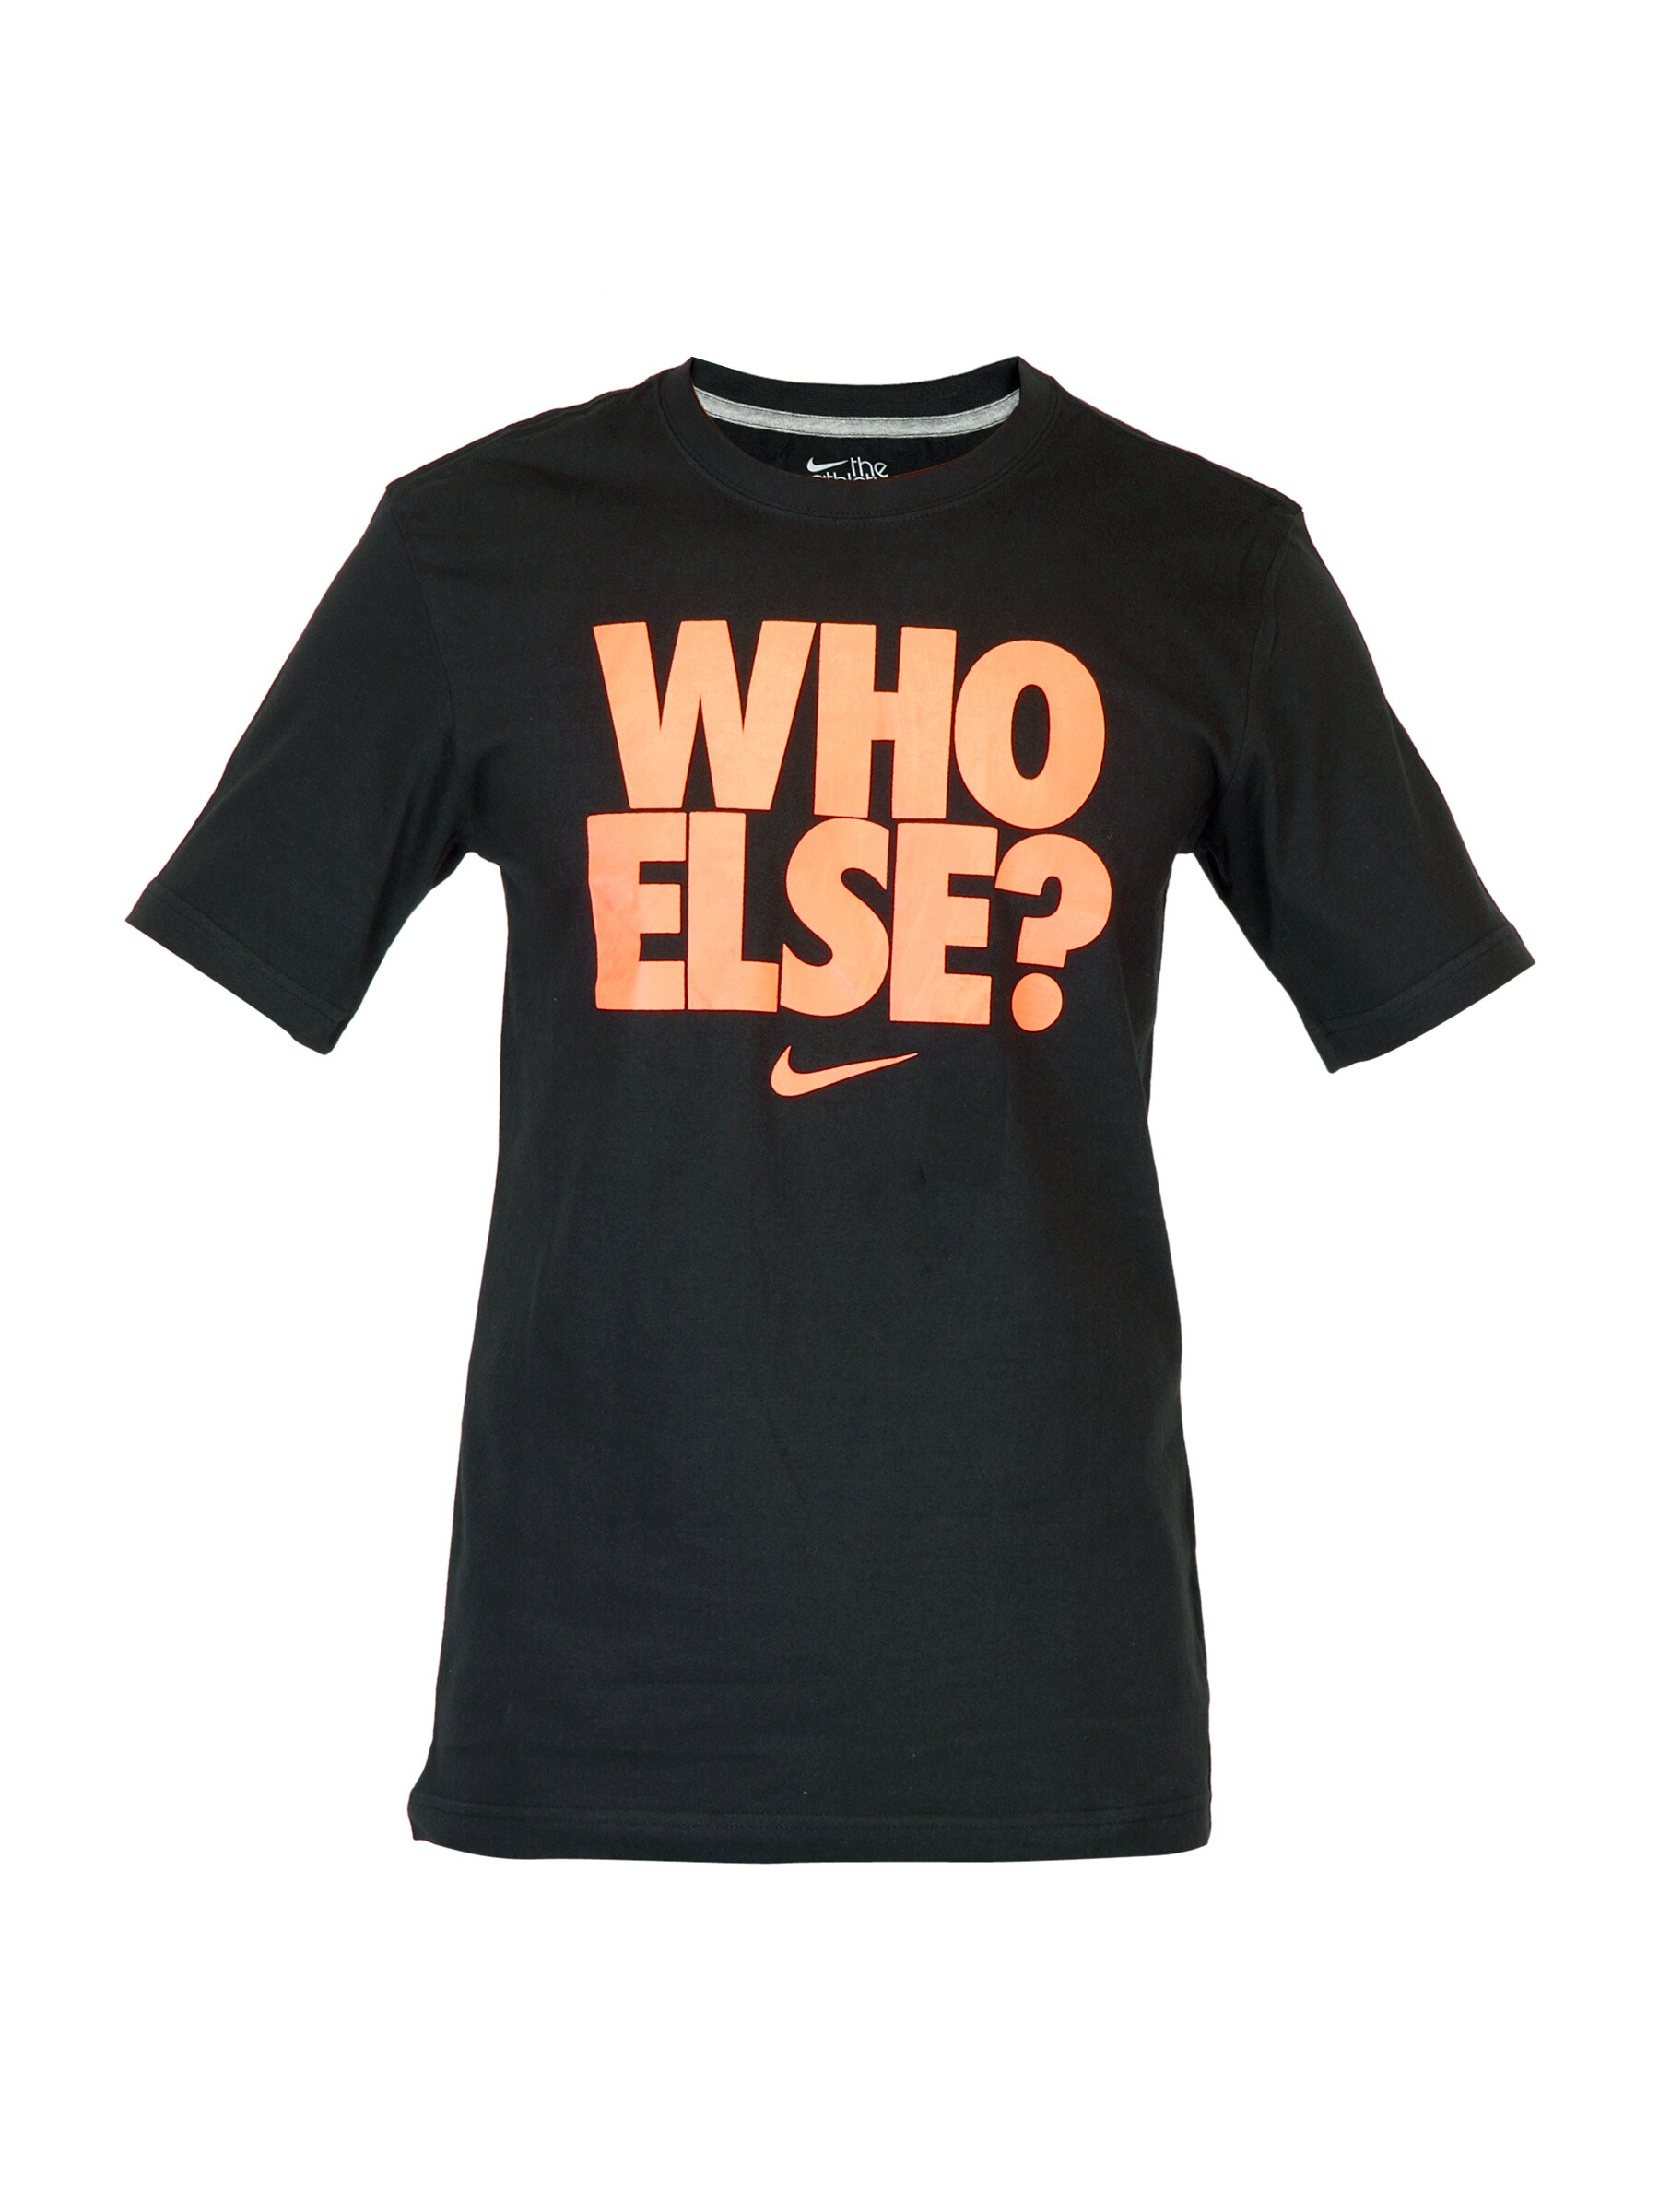 Nike Men Who Else Black T-shirt